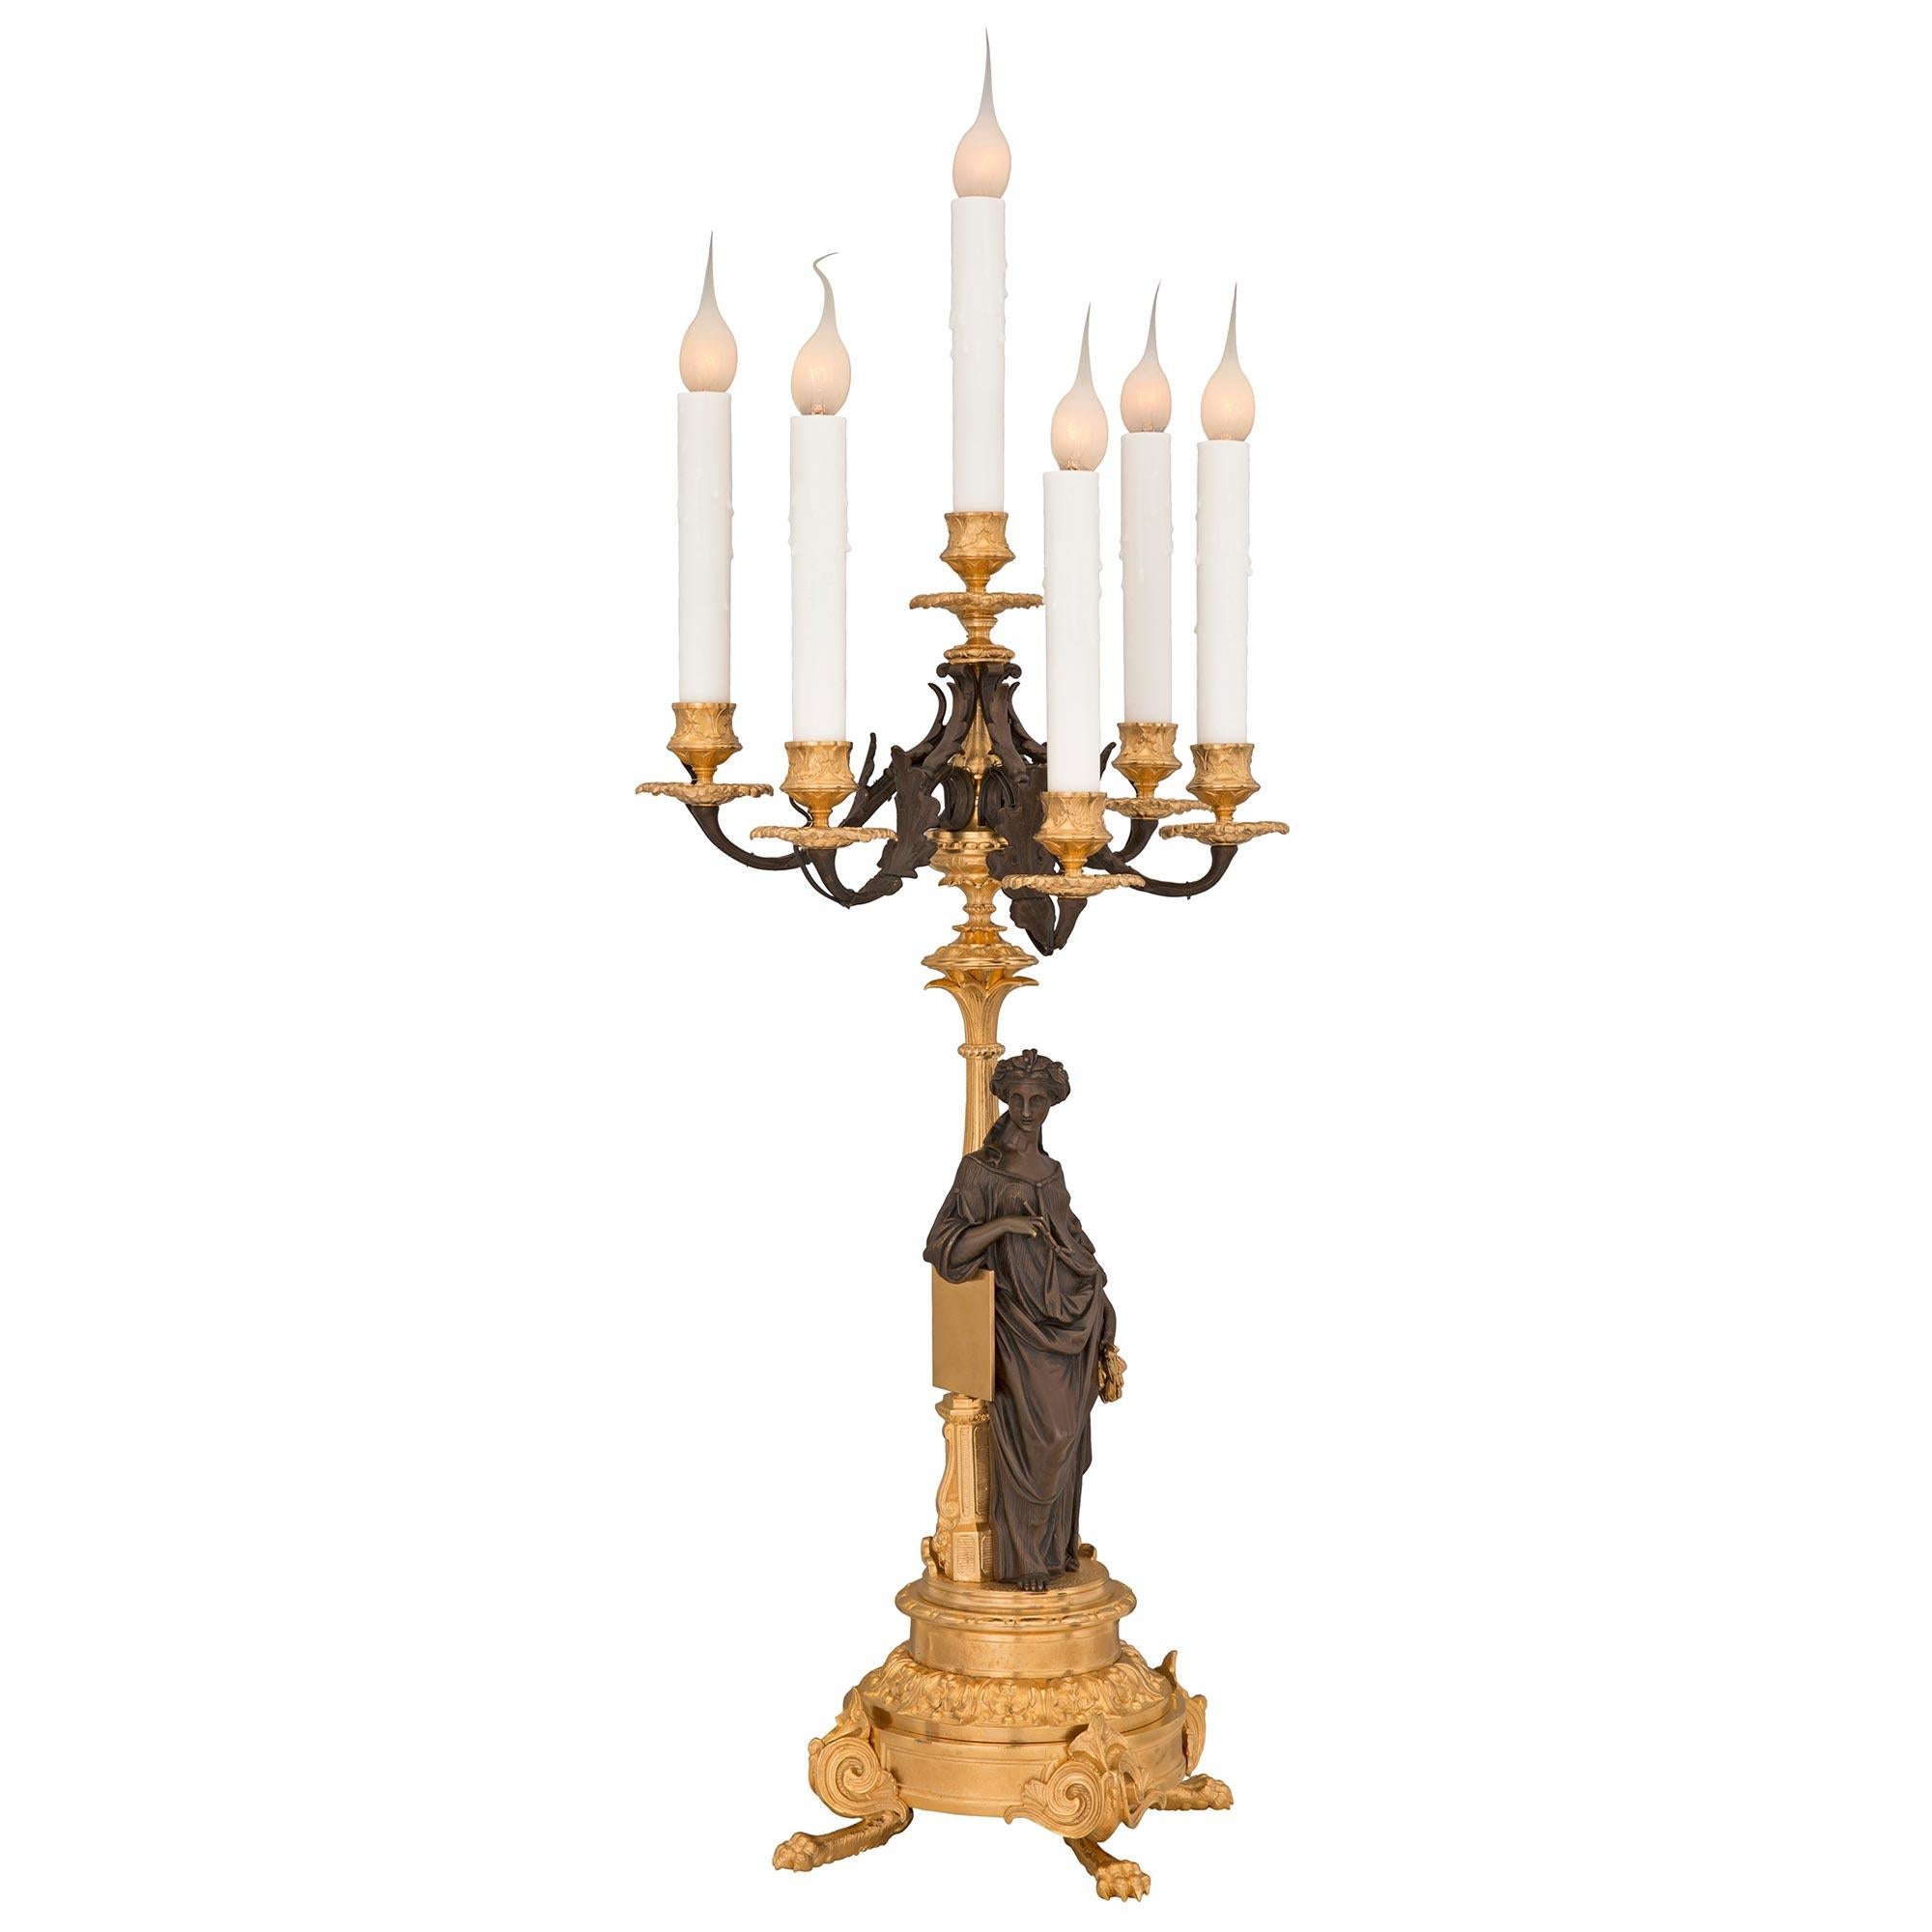 Une impressionnante paire de candélabres en bronze patiné et bronze doré de style Renaissance française du 19ème siècle. Chaque lampe à six bras est surélevée par de beaux pieds à pattes sous des motifs feuillus et une base circulaire avec une bande